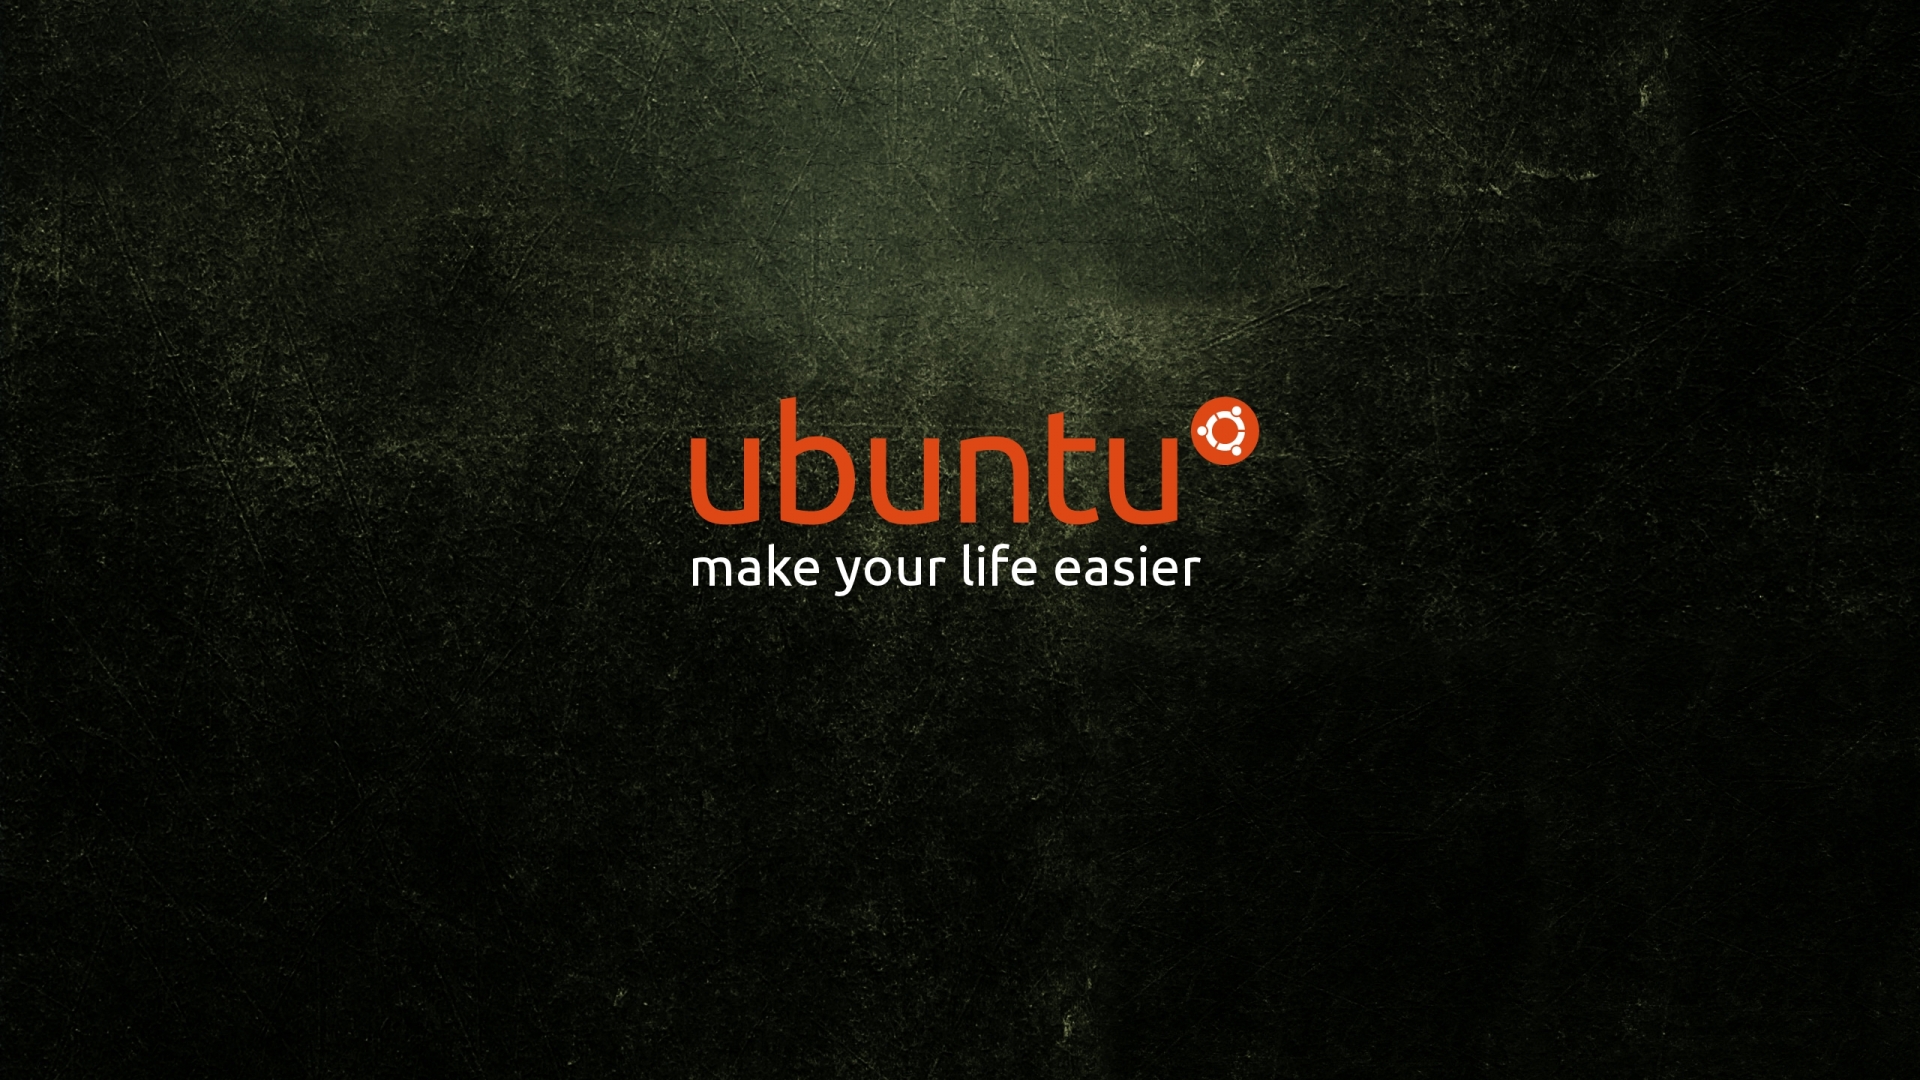 Ubuntu Wallpaper HD Imagenes Gratis Dise O